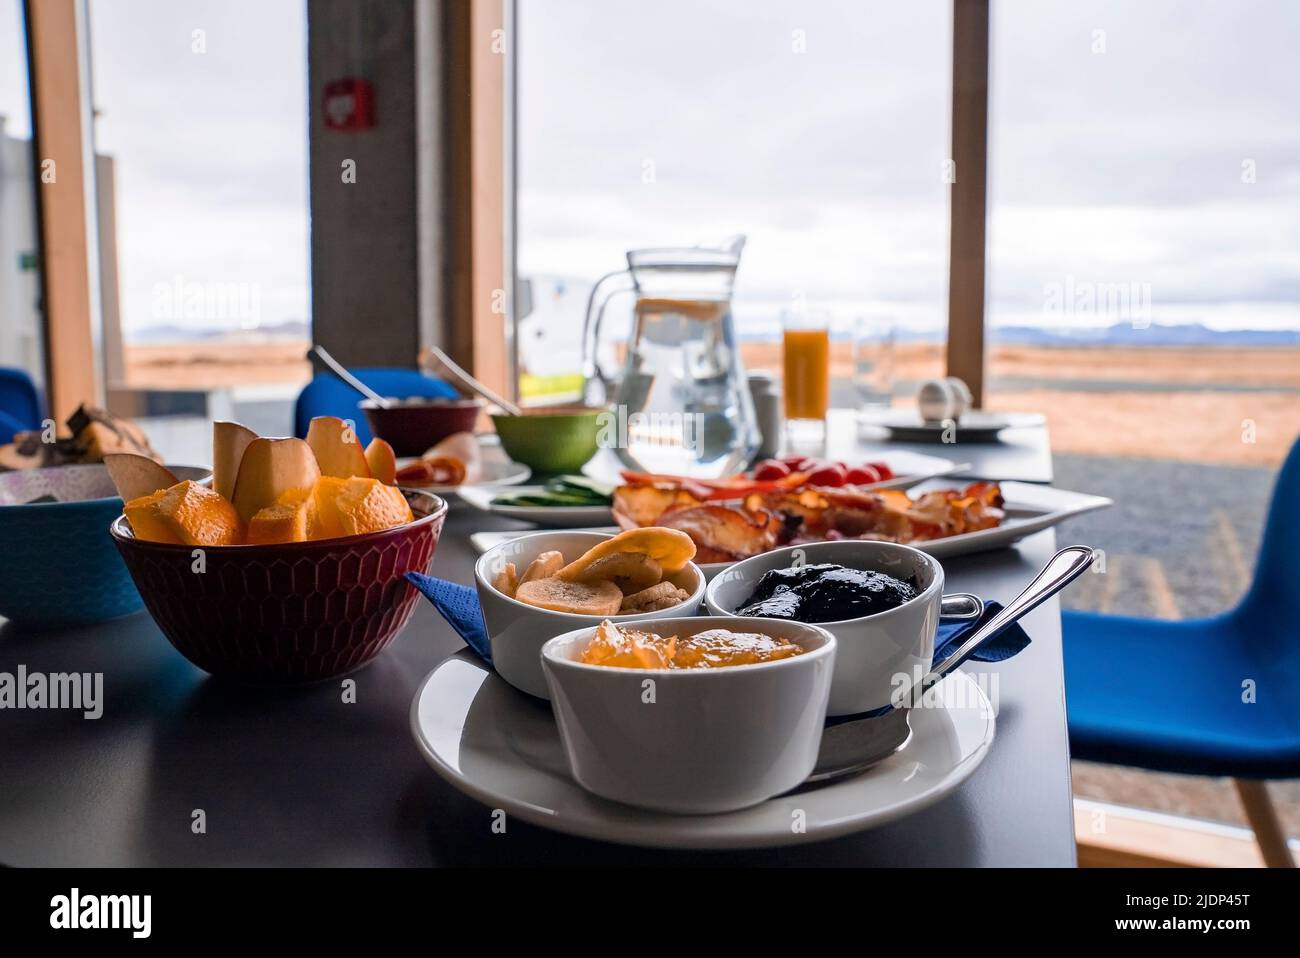 Das nahrhafte Frühstück wird am Tisch vor dem Fenster mit Blick auf das luxuriöse Hotel serviert Stockfoto